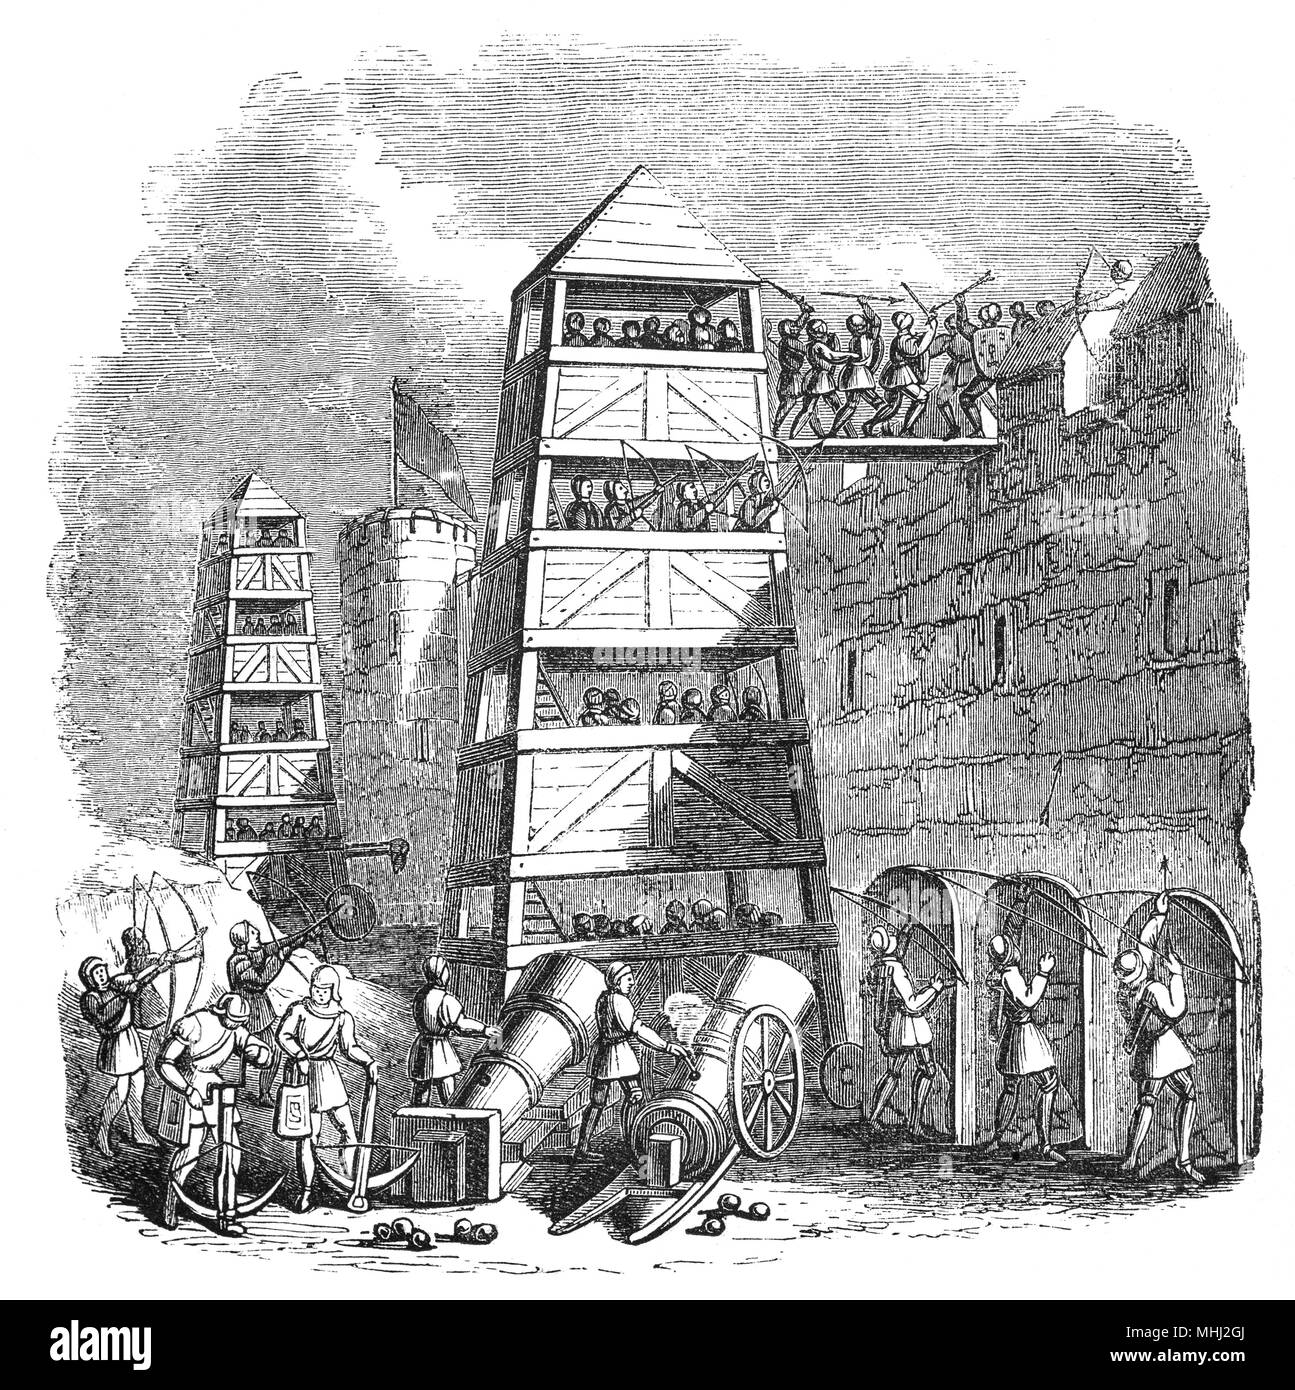 Un assedio torre nel XIV secolo da cui longbows e balestre potrebbe essere utilizzato nella guerra d'assedio. Essi sono stati utilizzati lungo il lato Cannon che ha sostituito i vari tipi di catapulte ma ancora comprendeva una vasta gamma di motori di assedio come scale di scalatura e arieti. Foto Stock